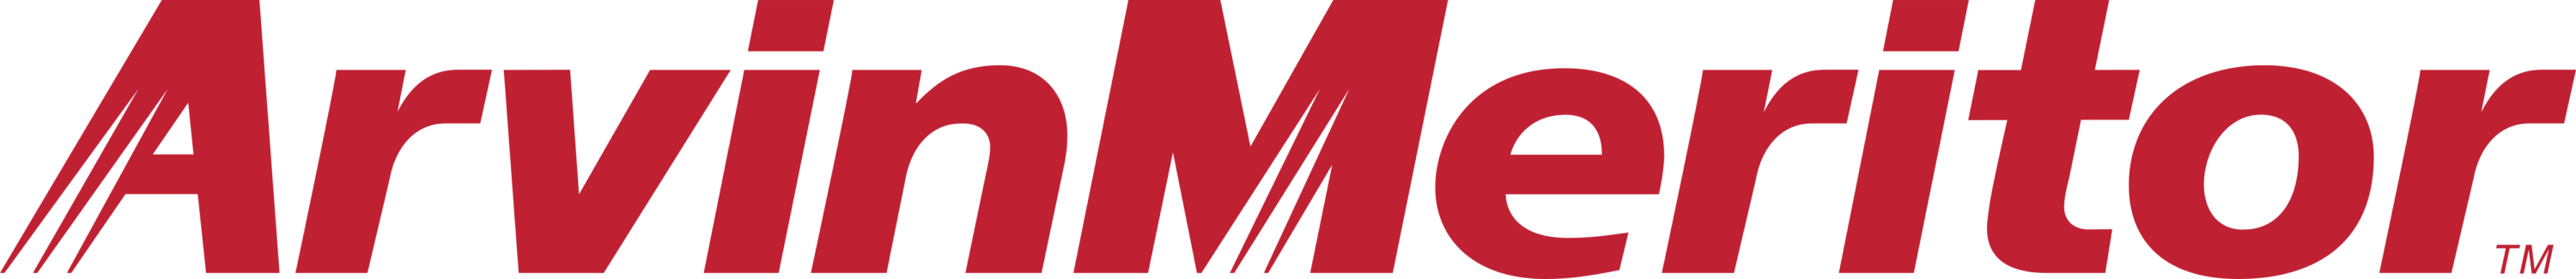 Arvin Meritor Logo